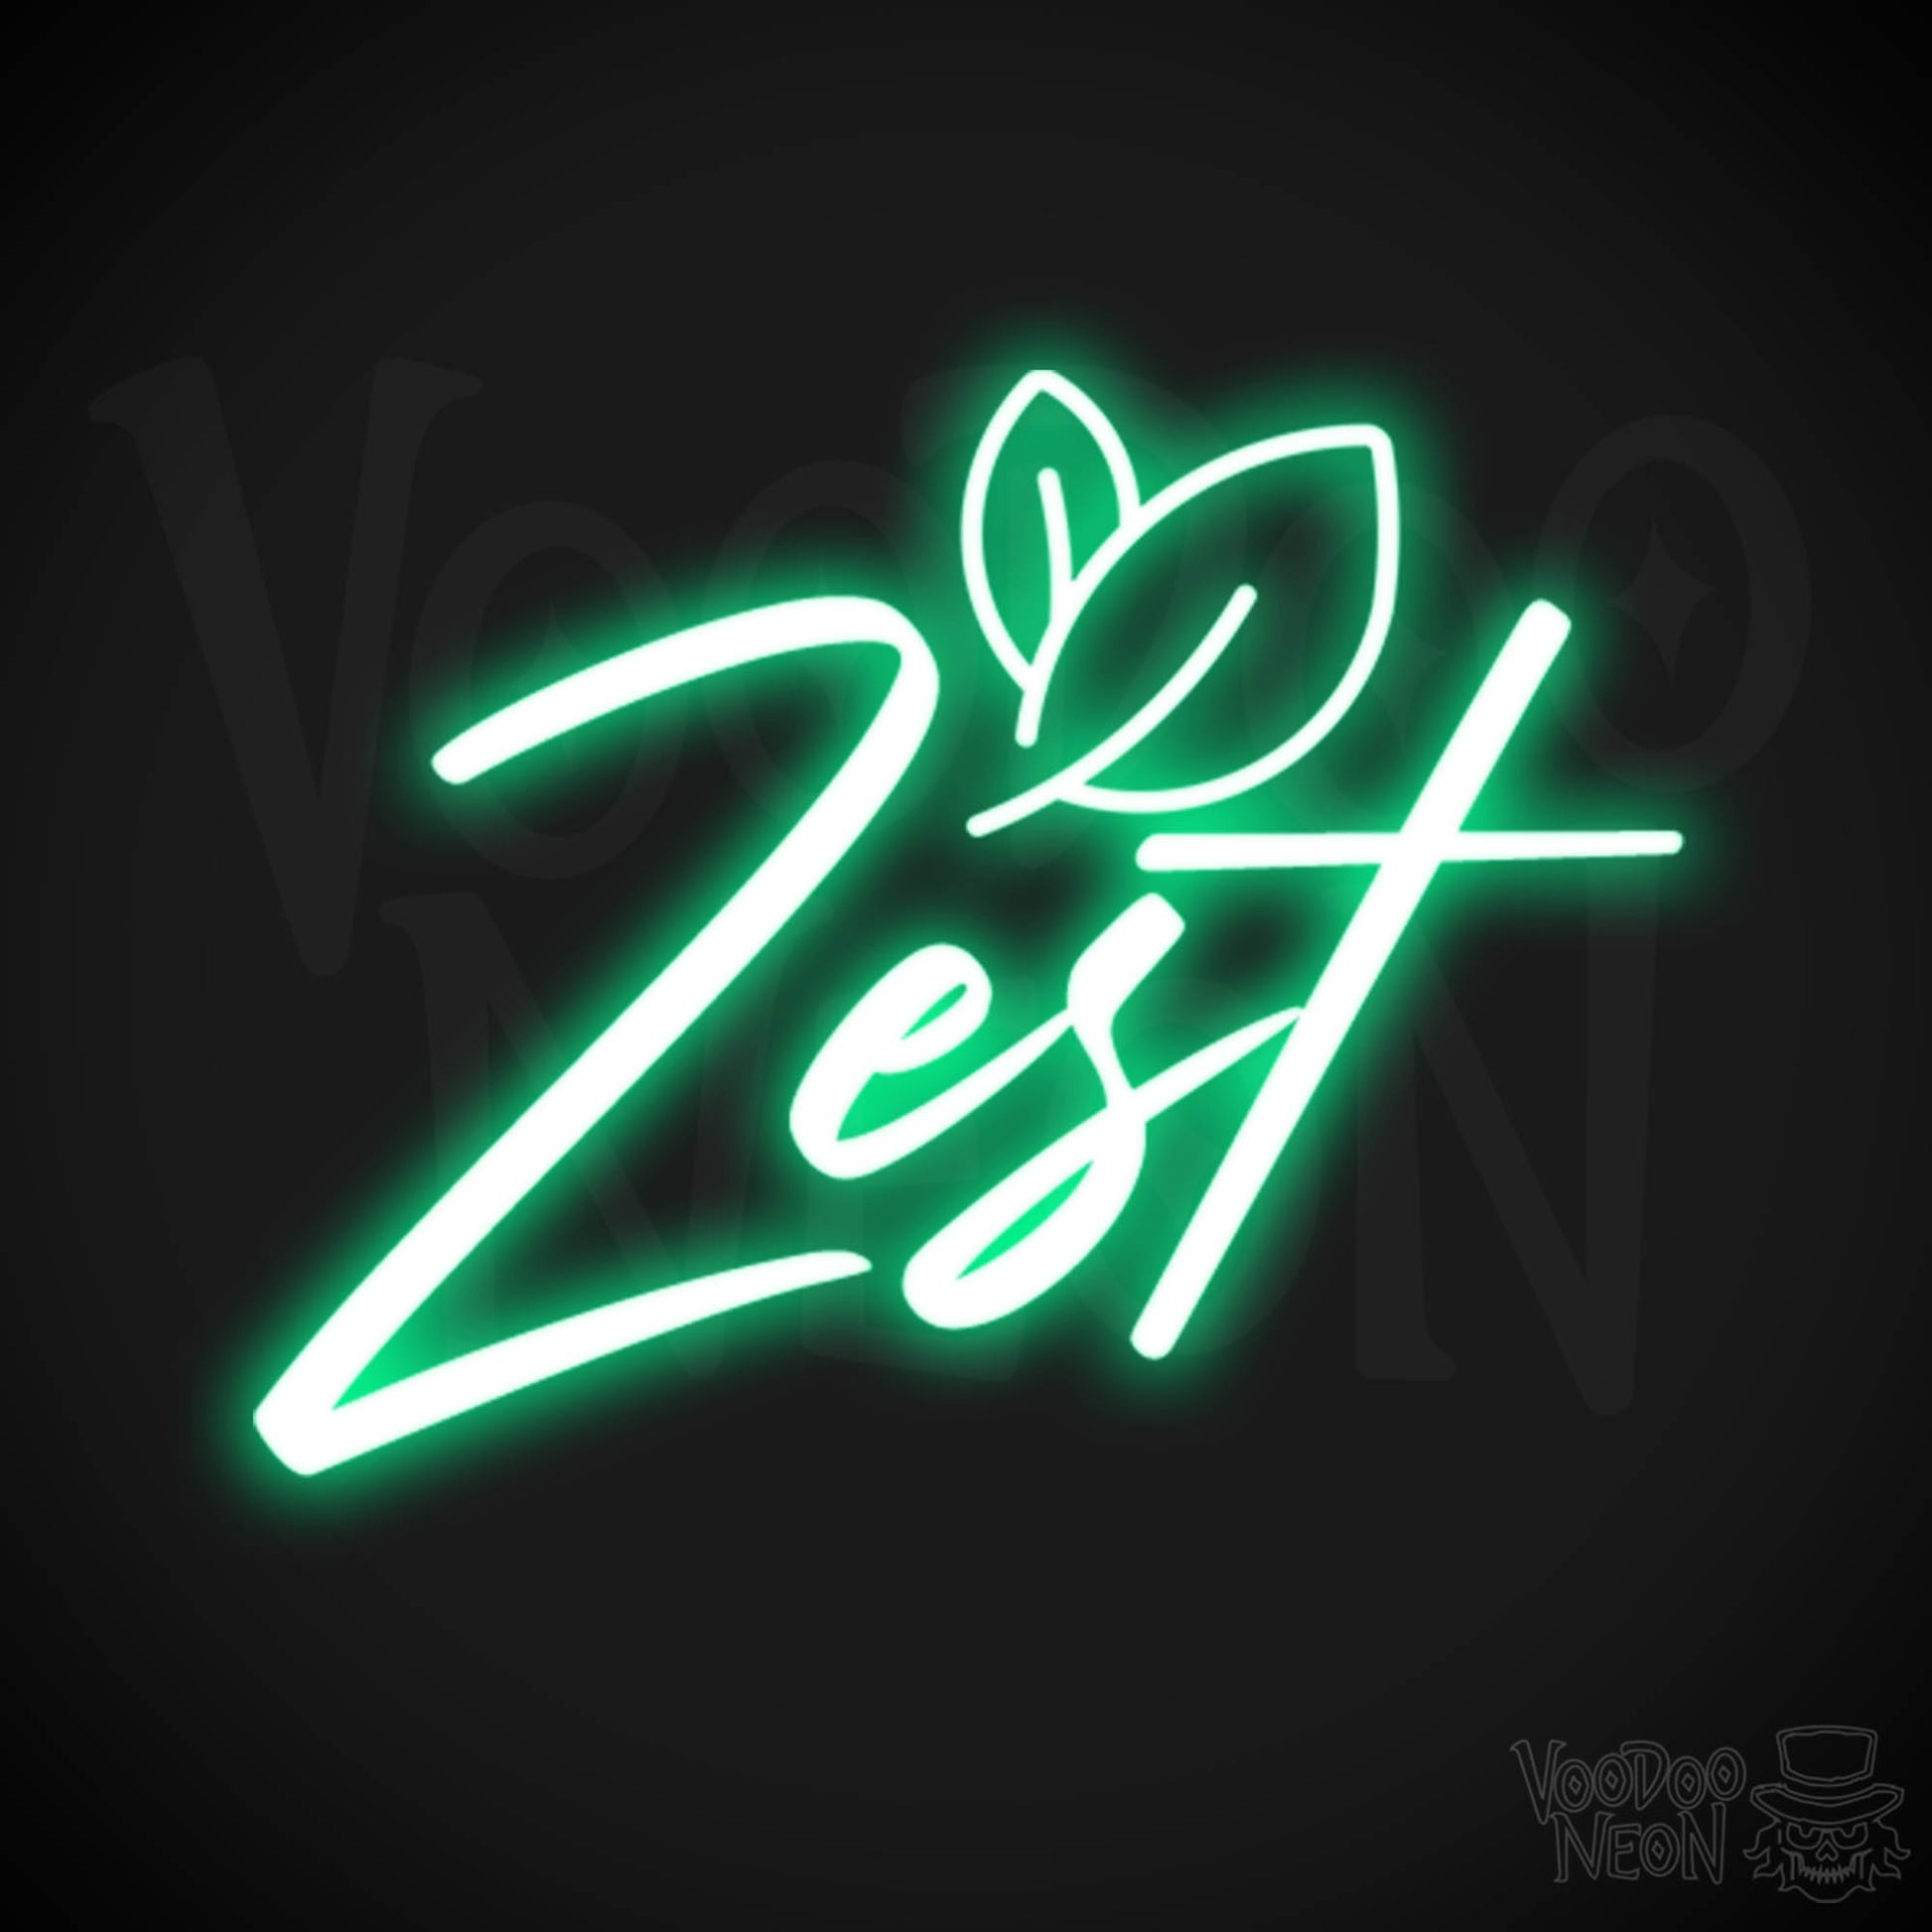 Zest Neon Sign - Neon Zest Sign - Color Green